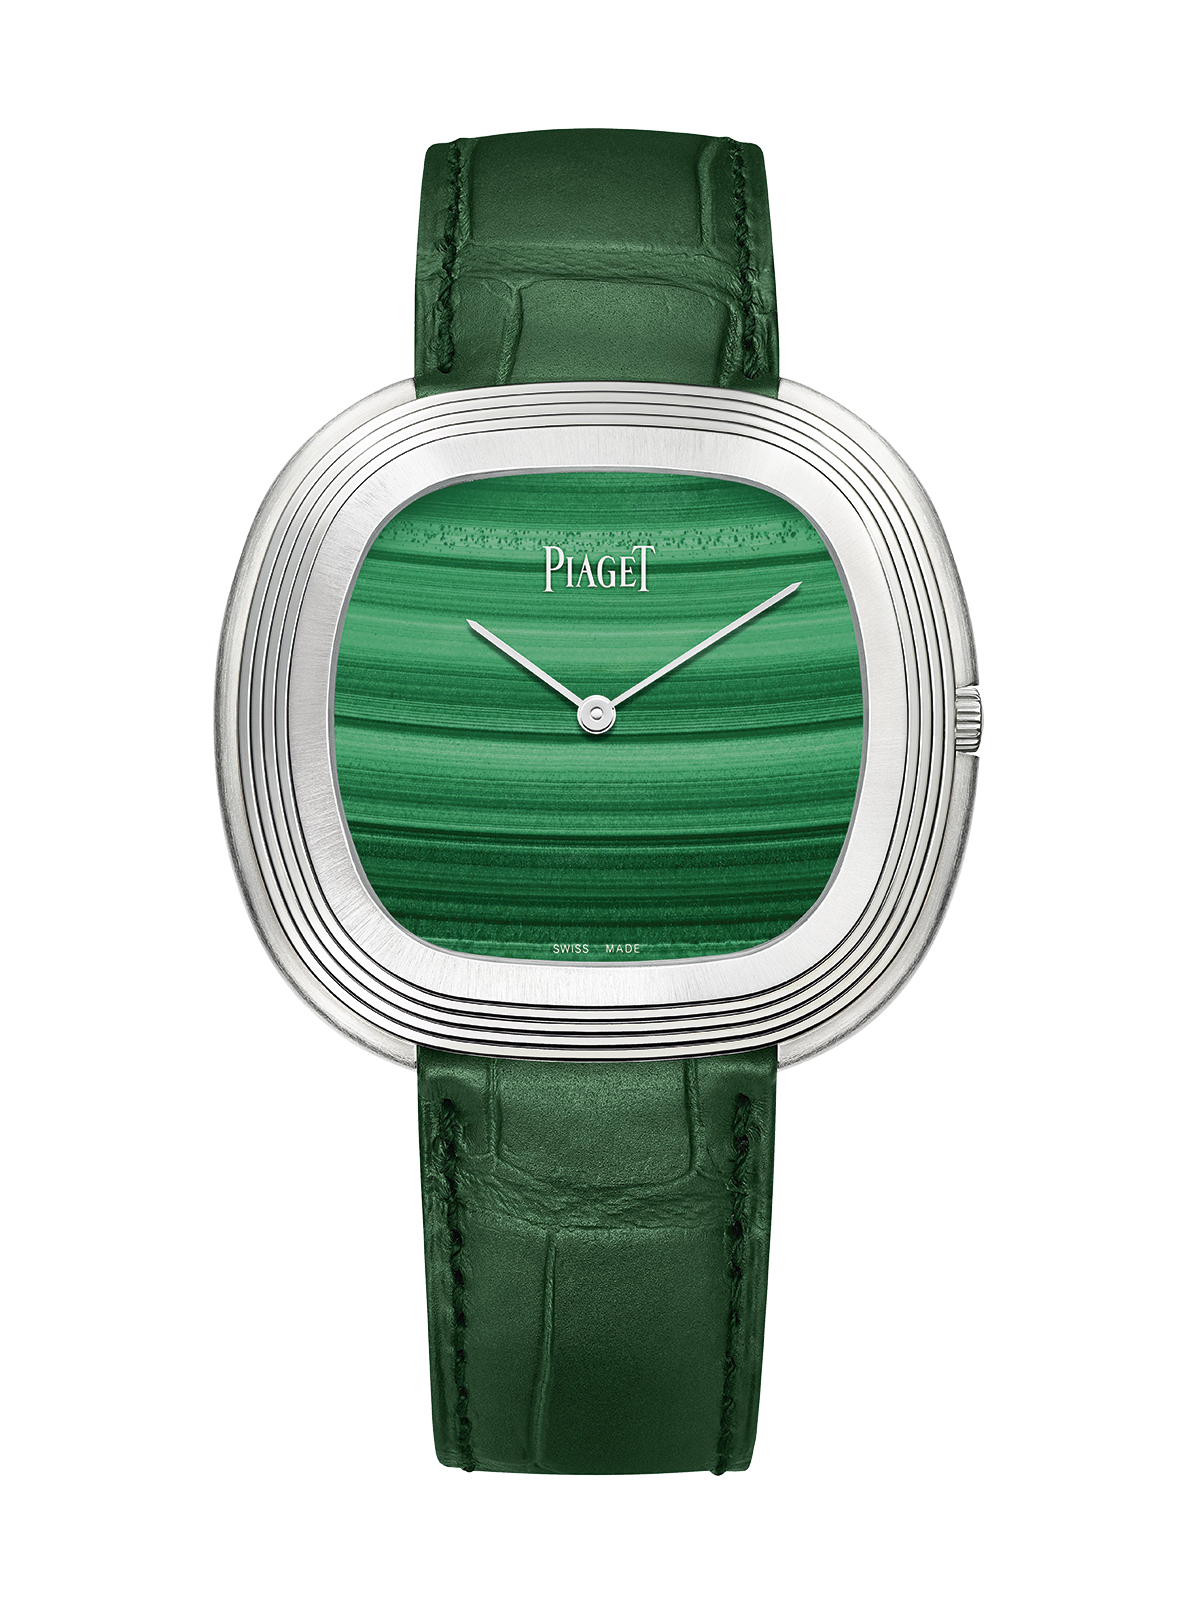 Vintage Watch Models - Piaget Black Tie